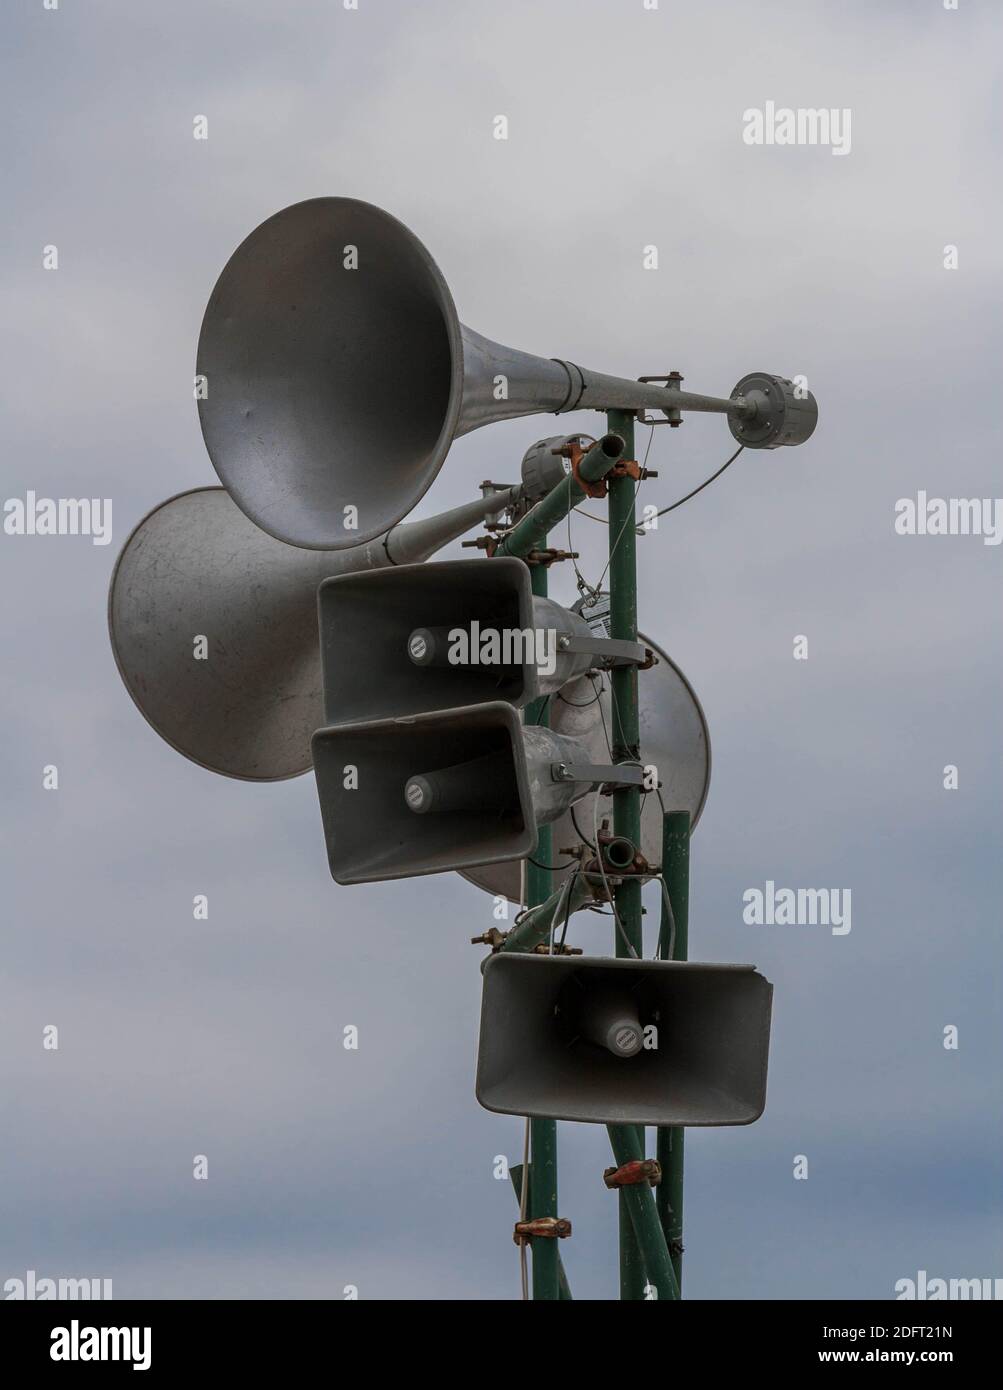 Tannoy oder Lautsprechersystem gegen einen dunklen, absenkenden Himmel - monochrom. Dystopische Vorschläge. Stockfoto